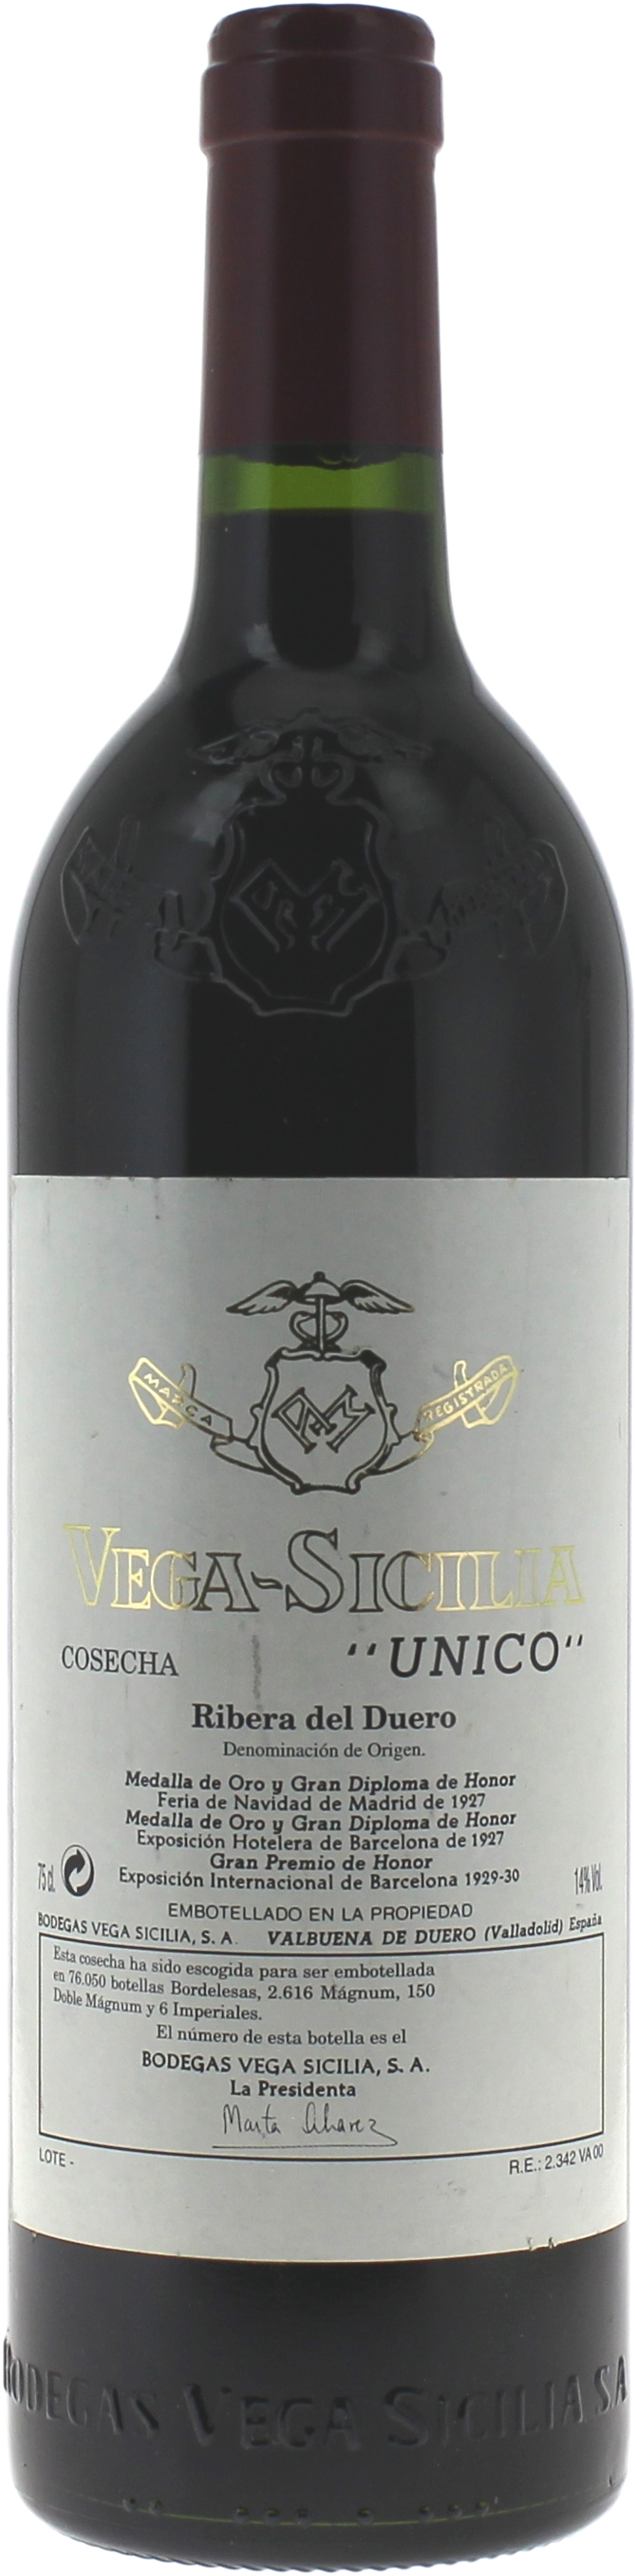 Vega sicilia unico 1999  Espagne, Vin Espagnol